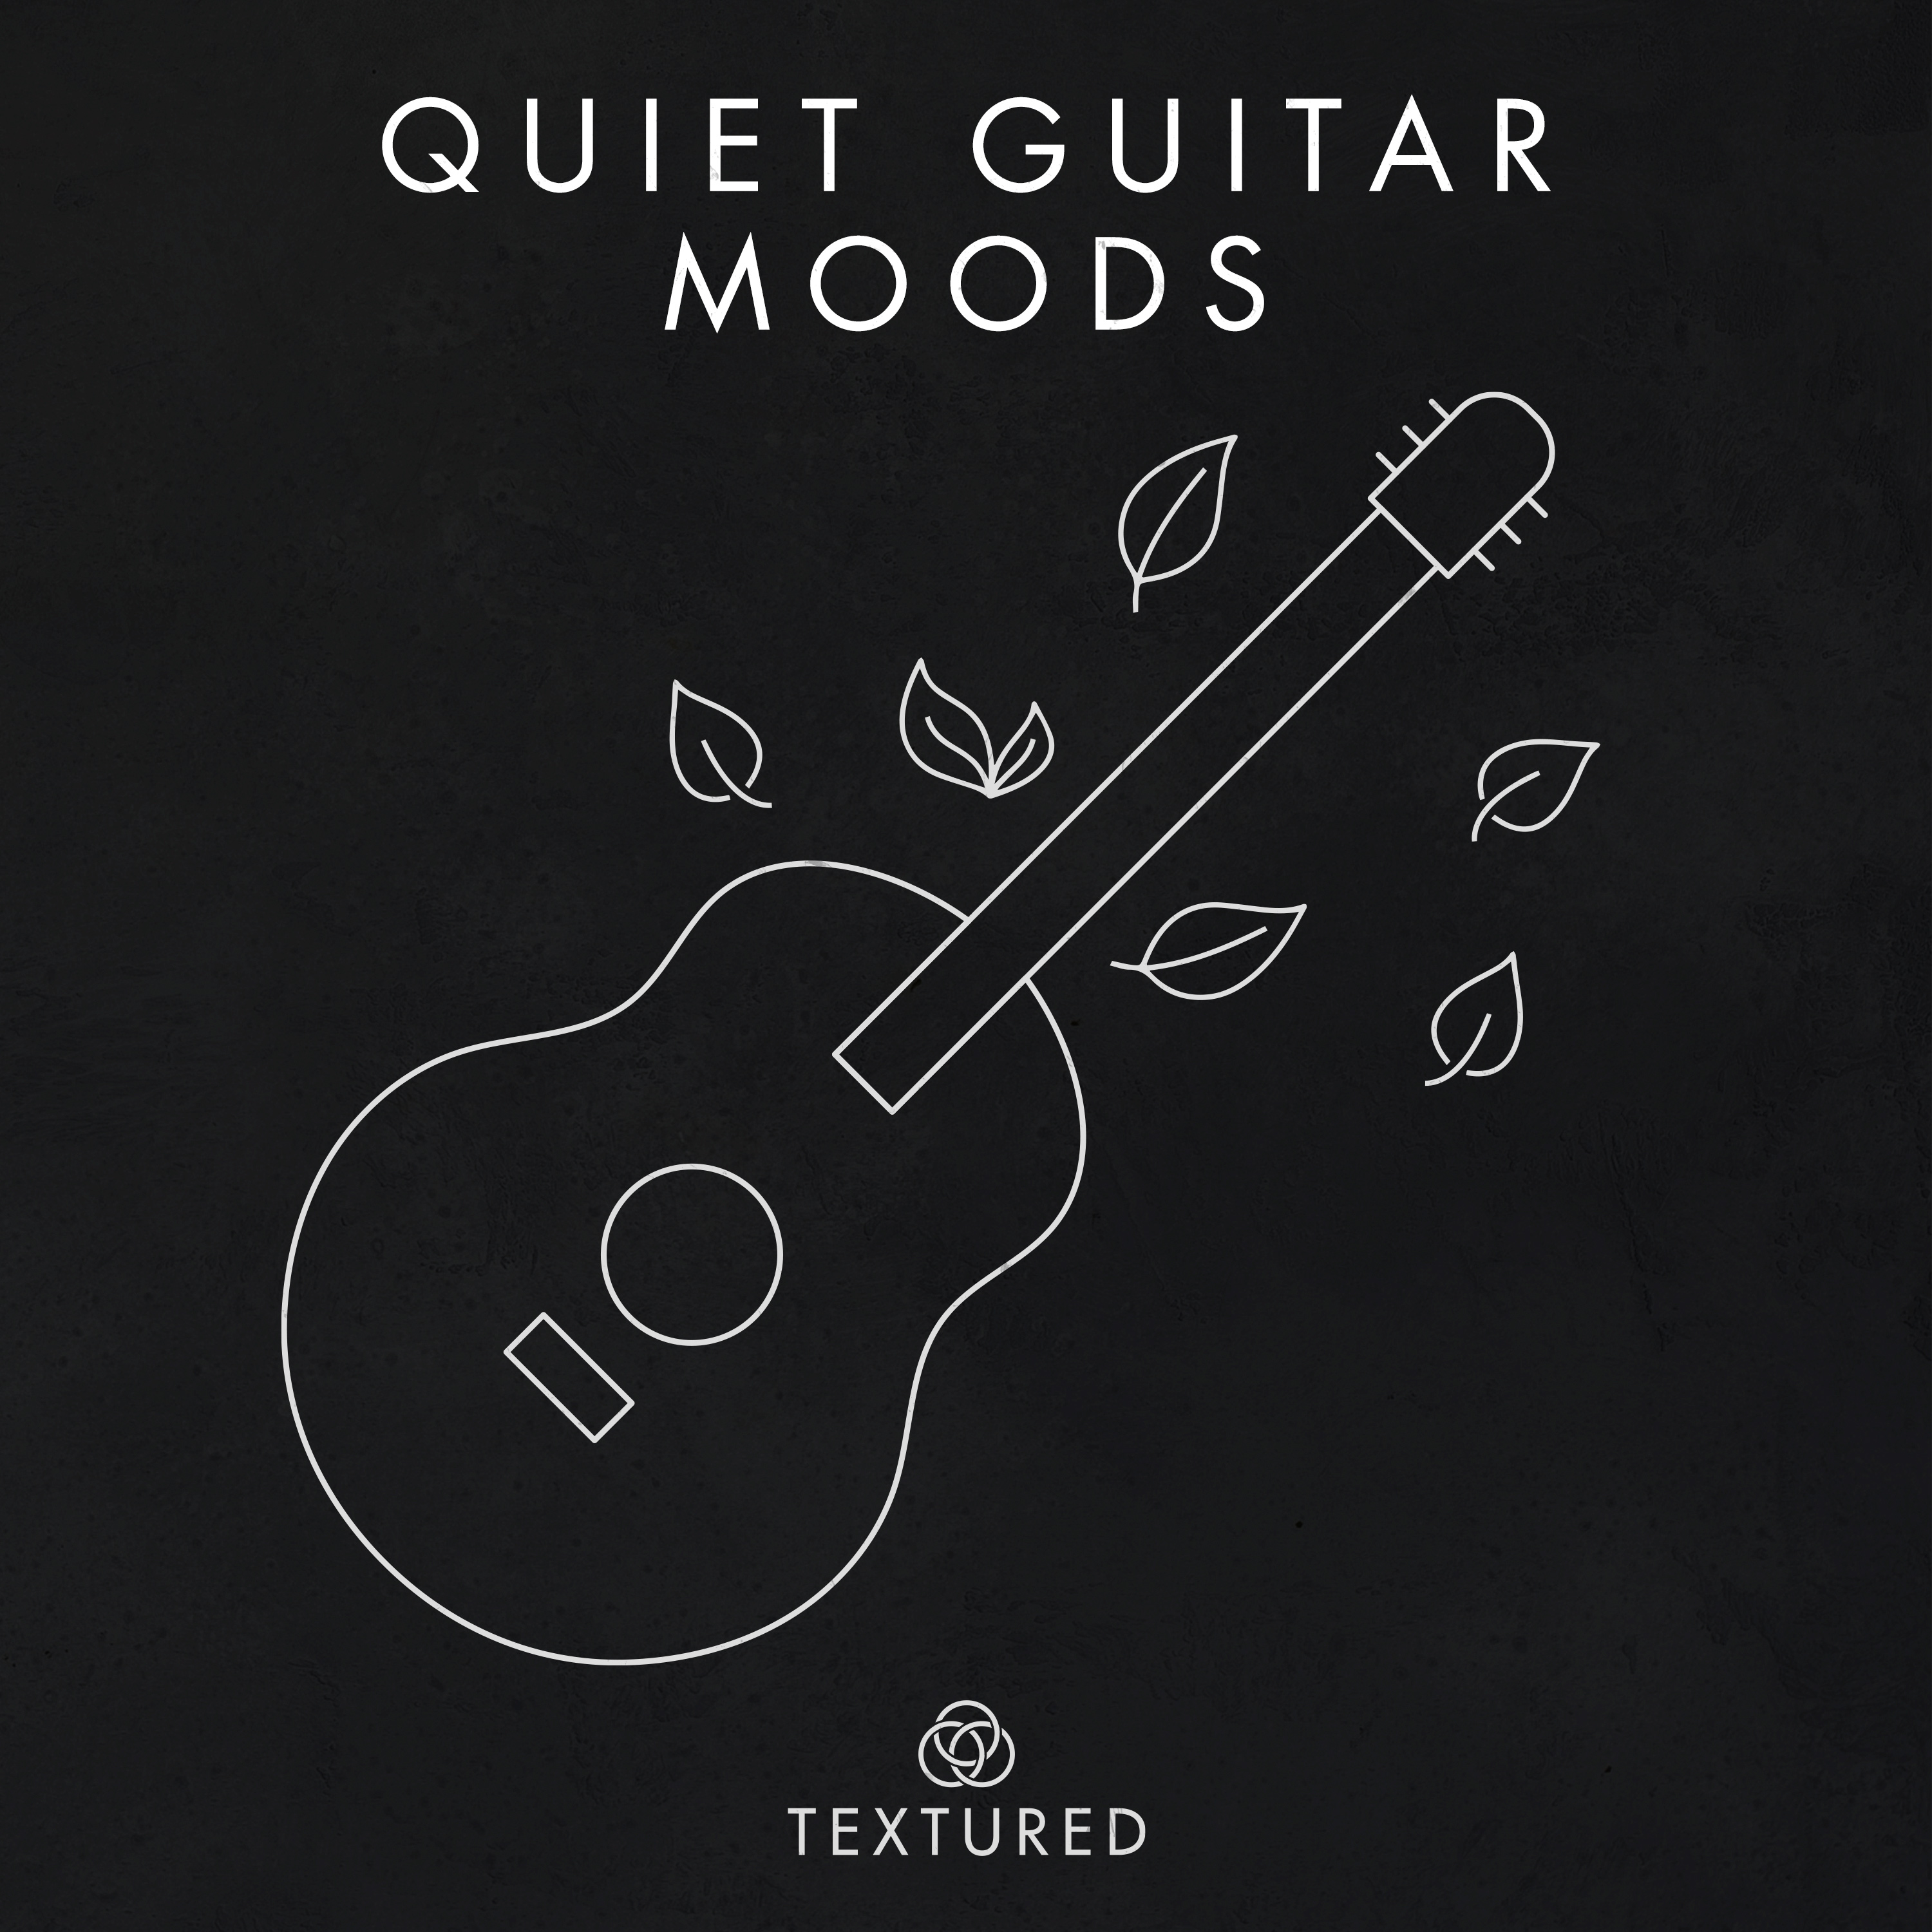 Quiet Guitar Moods